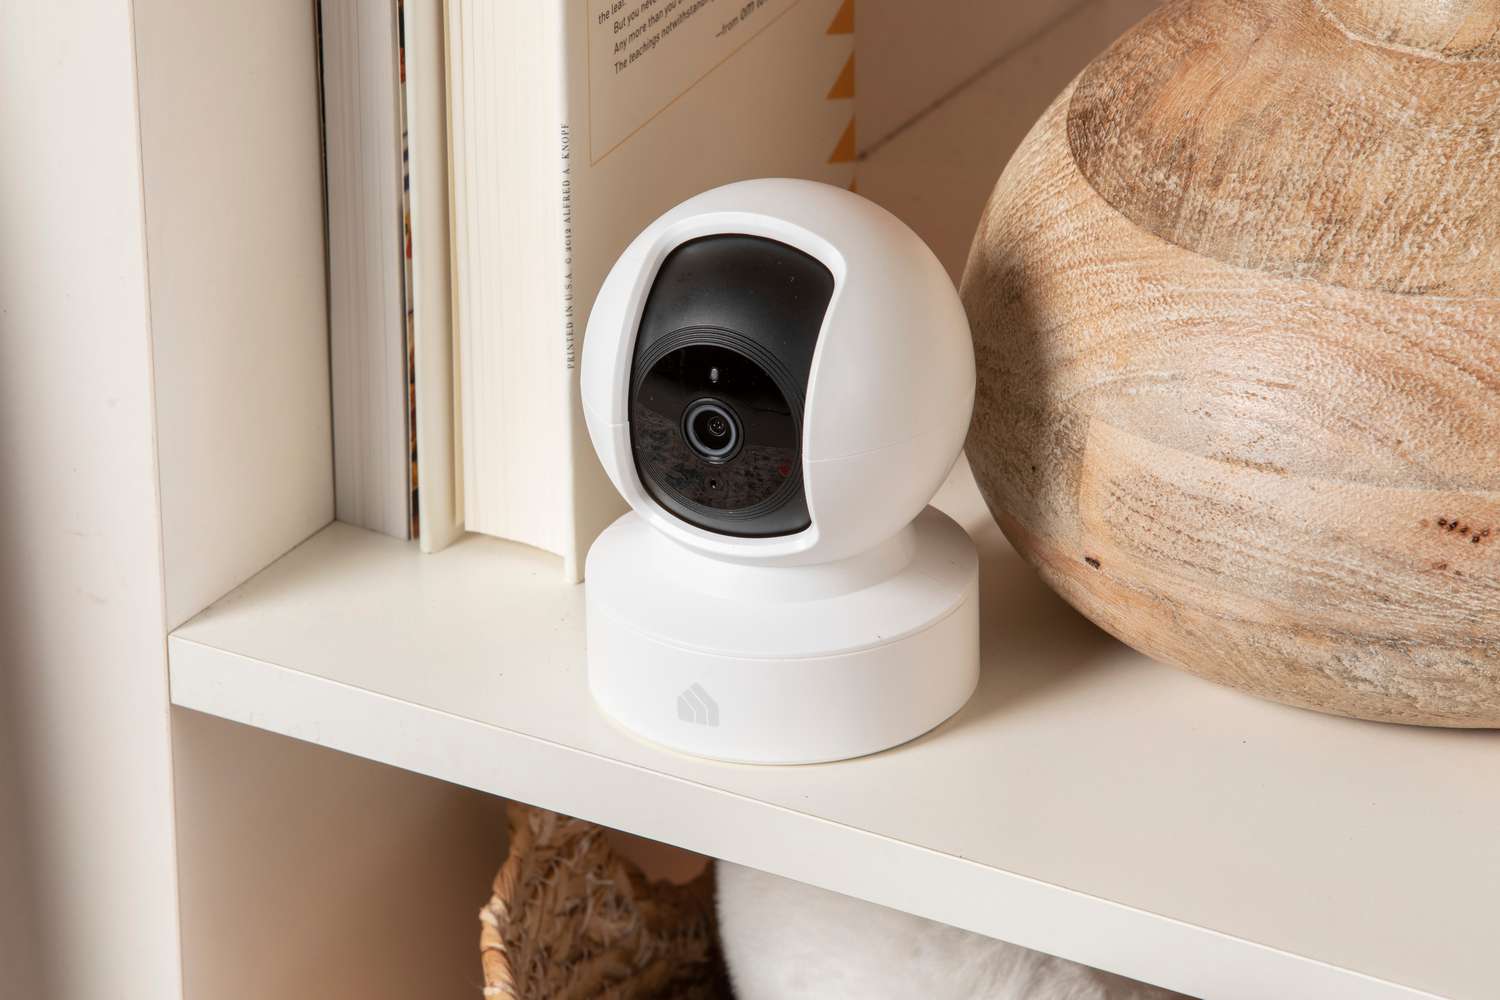 Kasa Indoor Pan/Tilt Smart Security Camera displayed on a shelf